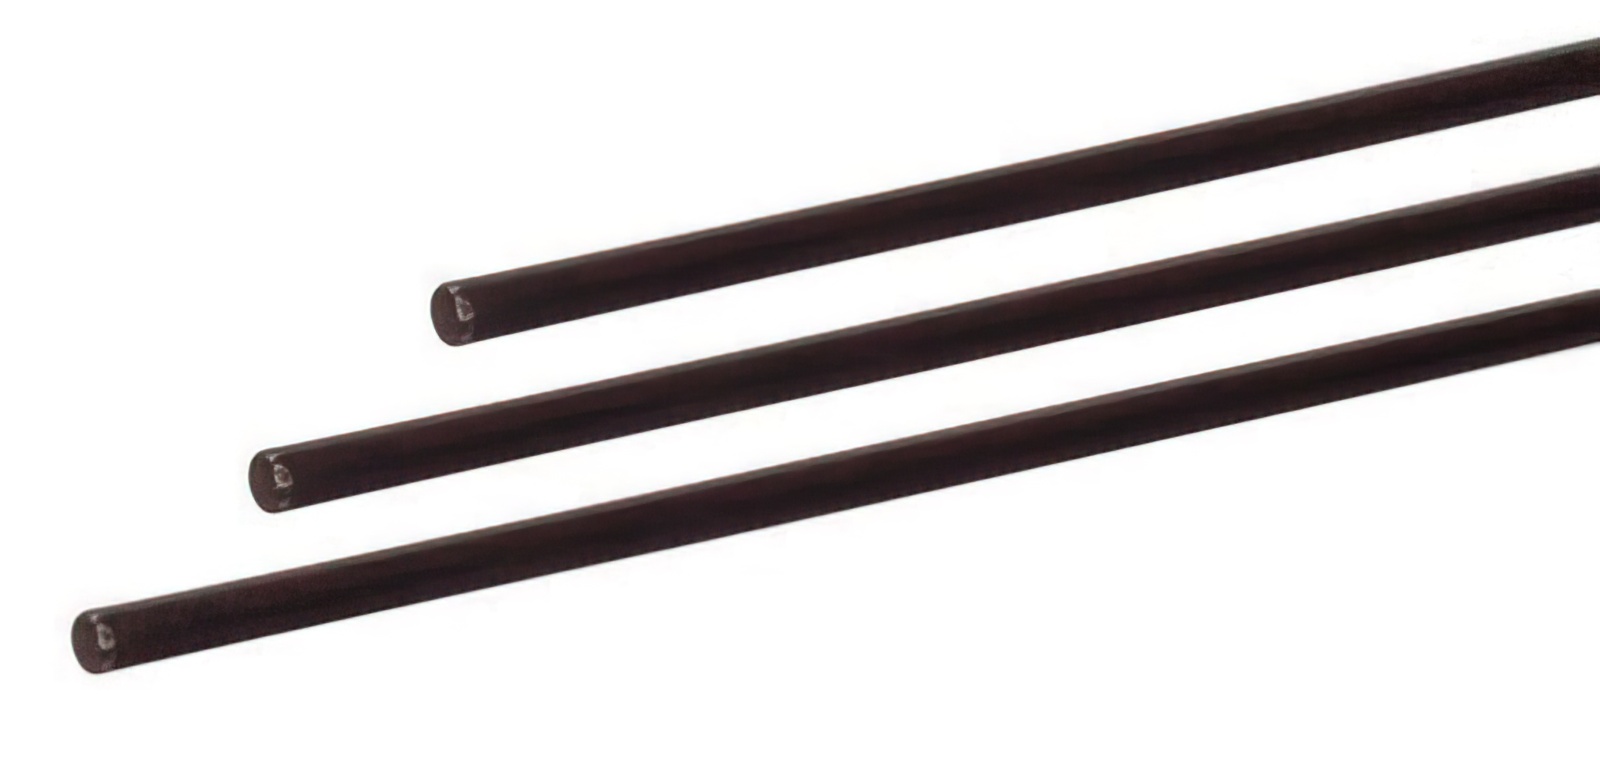 2 Stück - Gfk-Vollstab (Fiberglasstab/Glasfaserstab) 6  mm 175 cm schwarz für Drachen- und Modellbau Basteln Montagen Messebau Industrie Haushalt